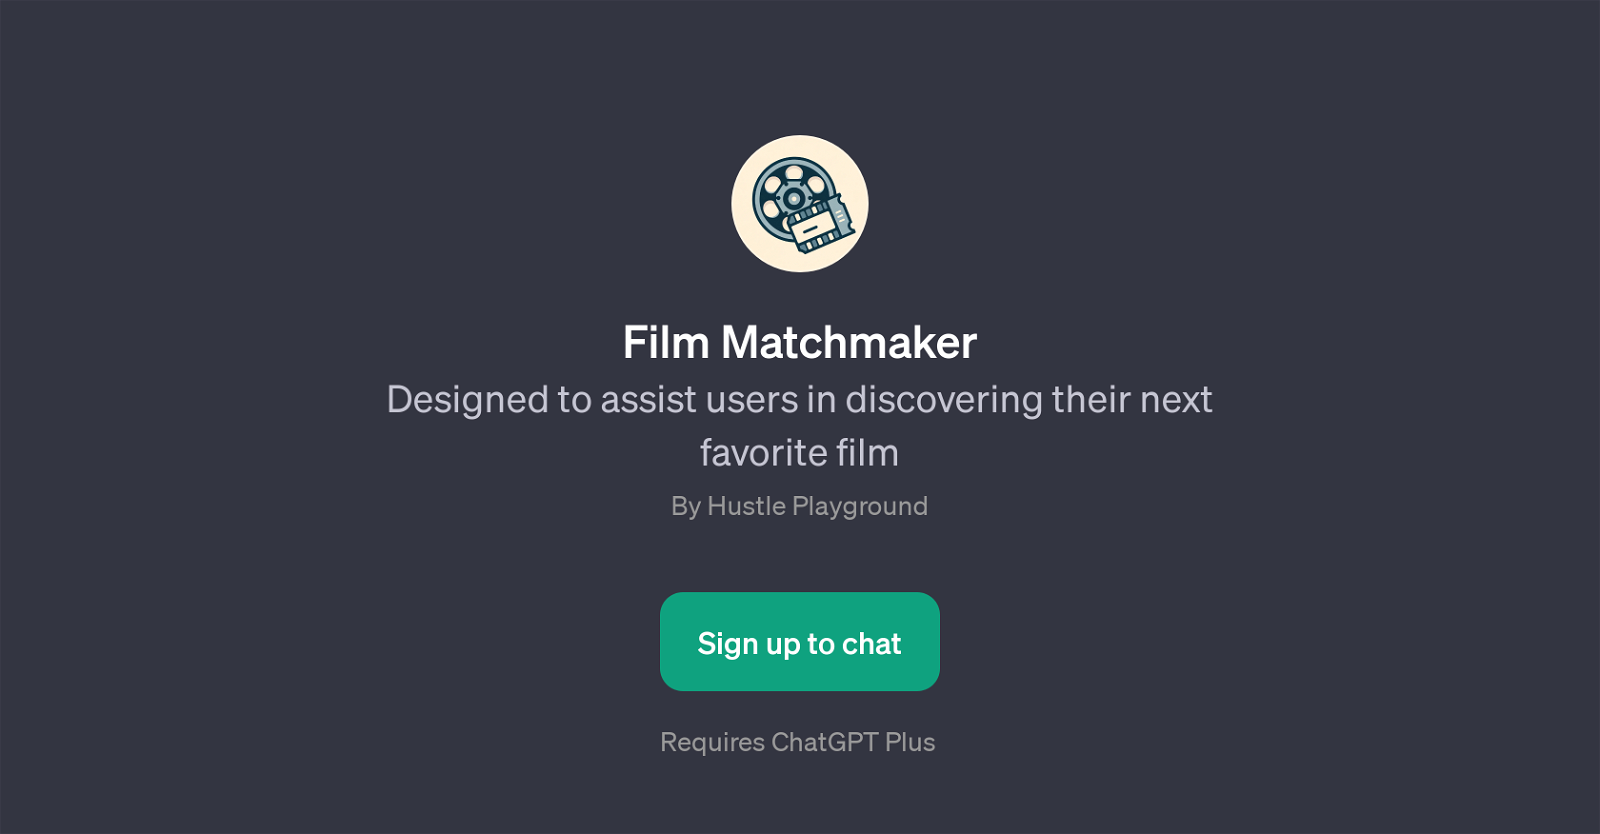 Film Matchmaker website